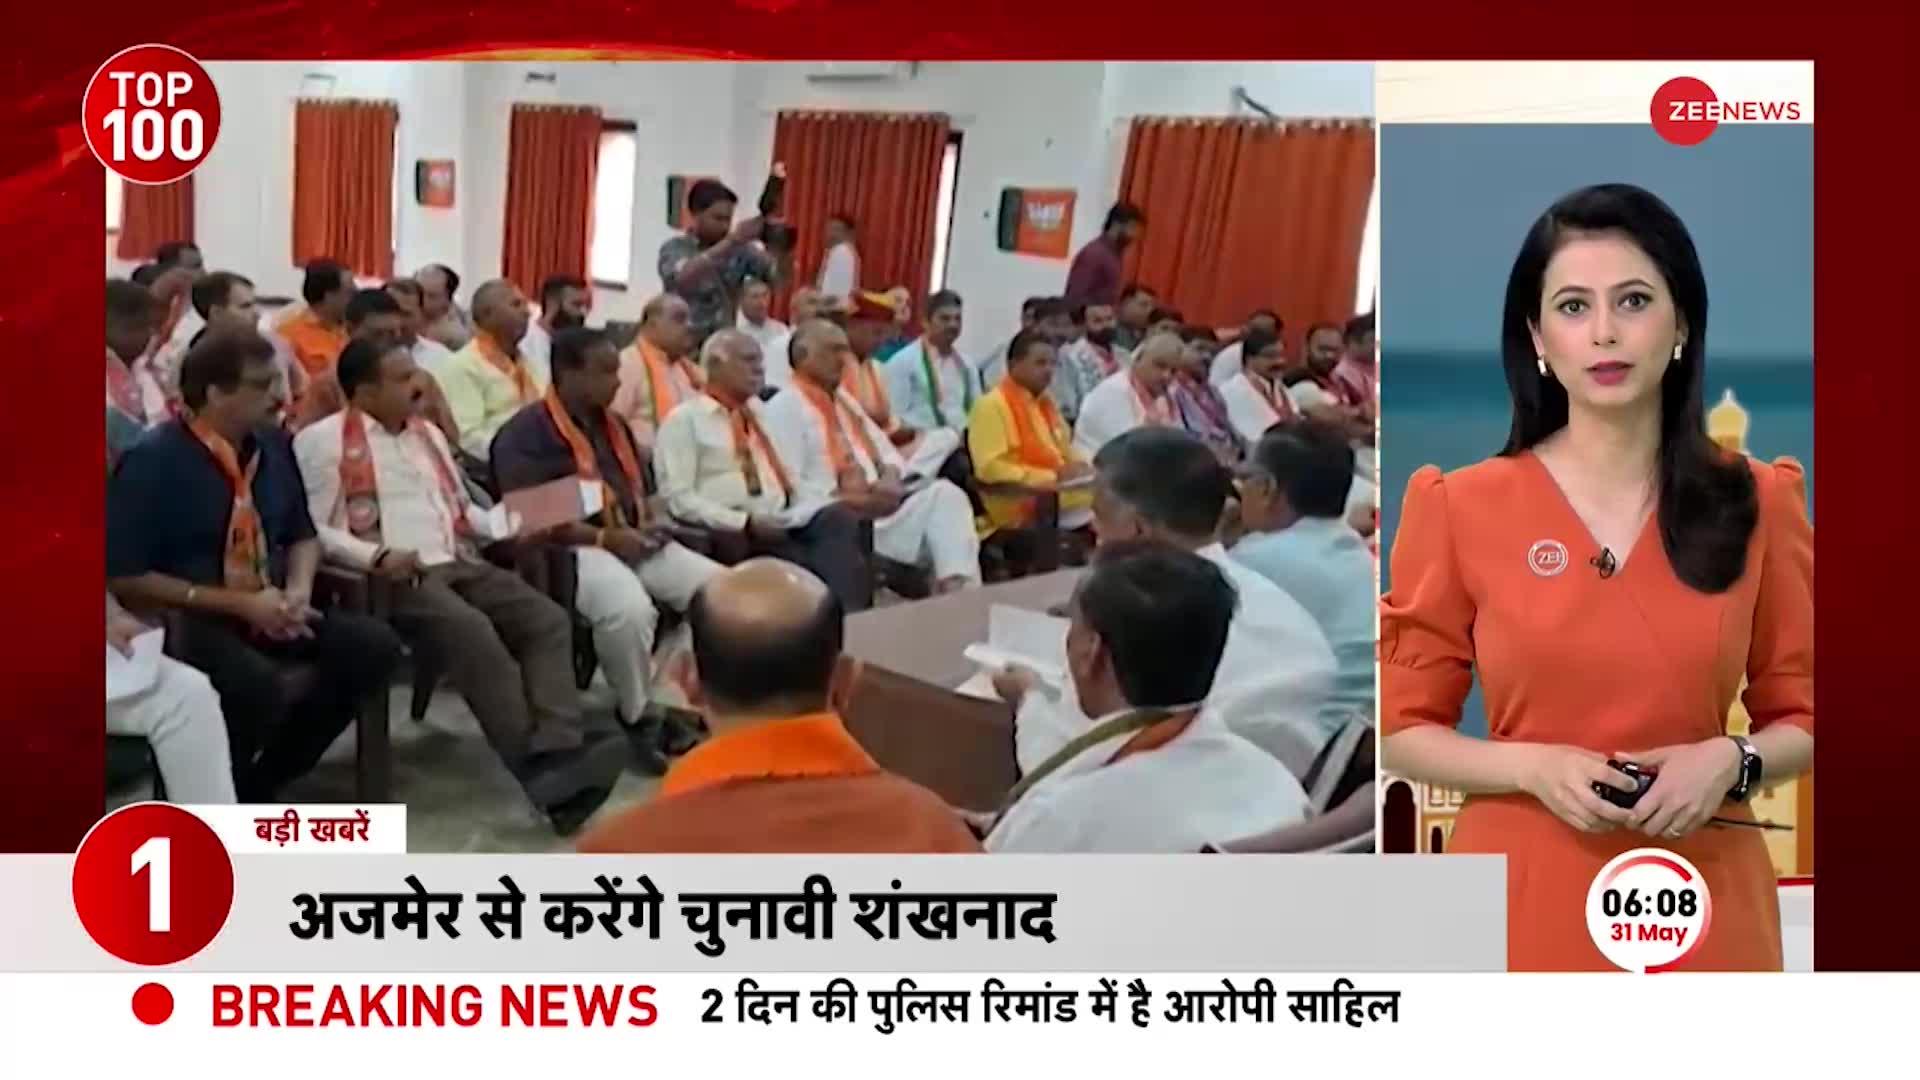 PM Modi Rajasthan Visit: मिशन राजस्थान पर प्रधानमंत्री मोदी, 40 विधानसभा सीटों को साधने की कोशिश